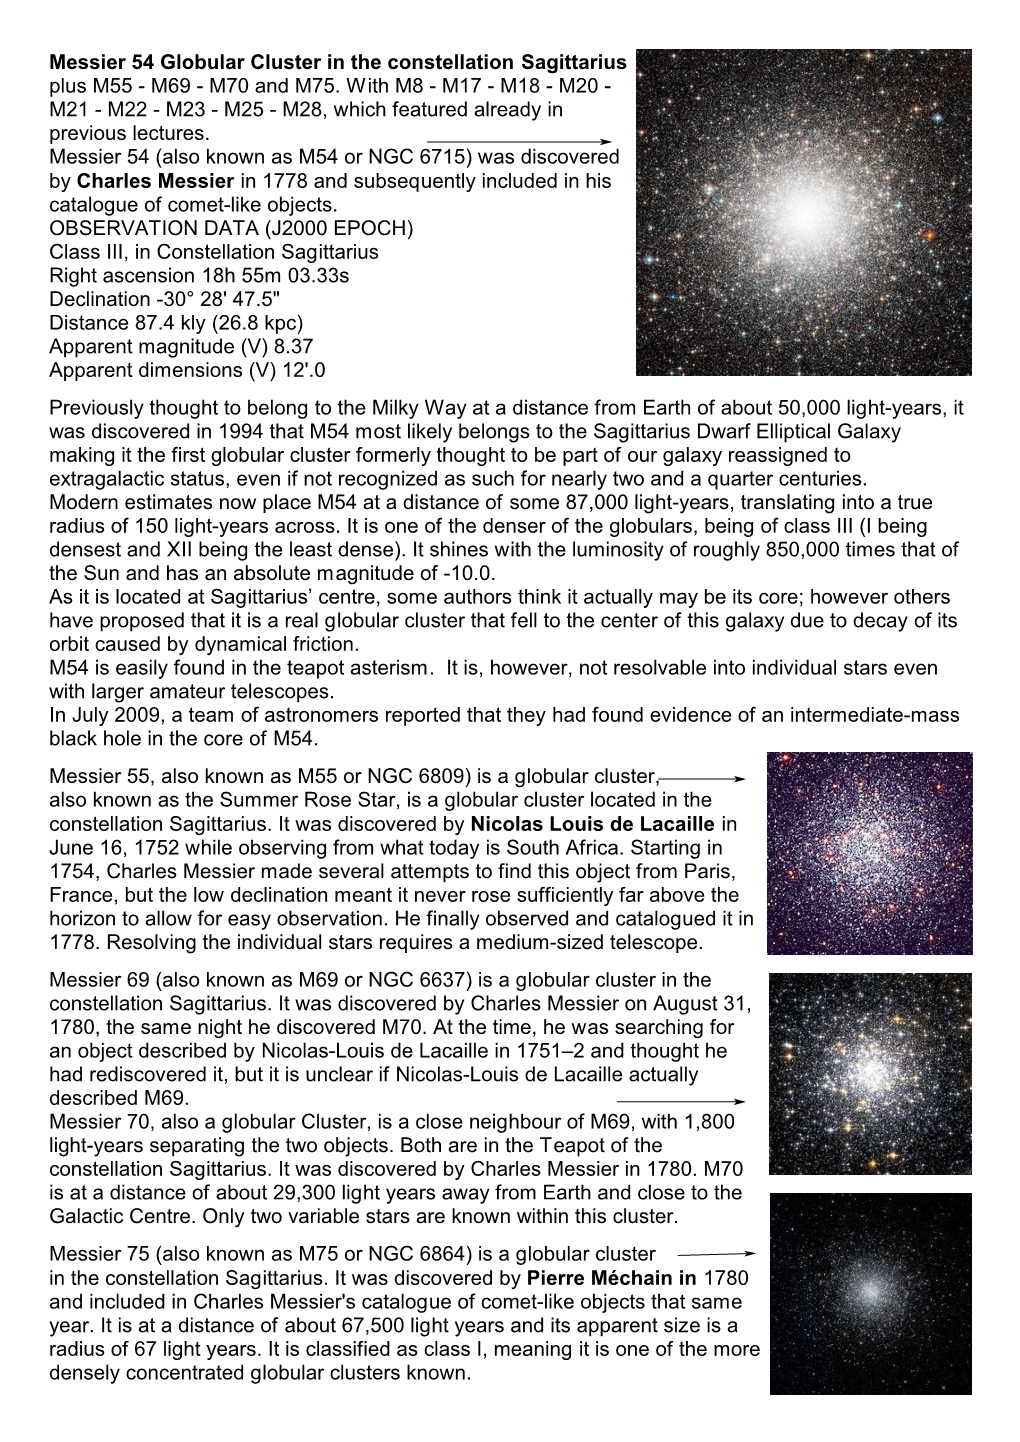 Messier 54 Globular Cluster in the Constellation Sagittarius Plus M55 - M69 - M70 and M75